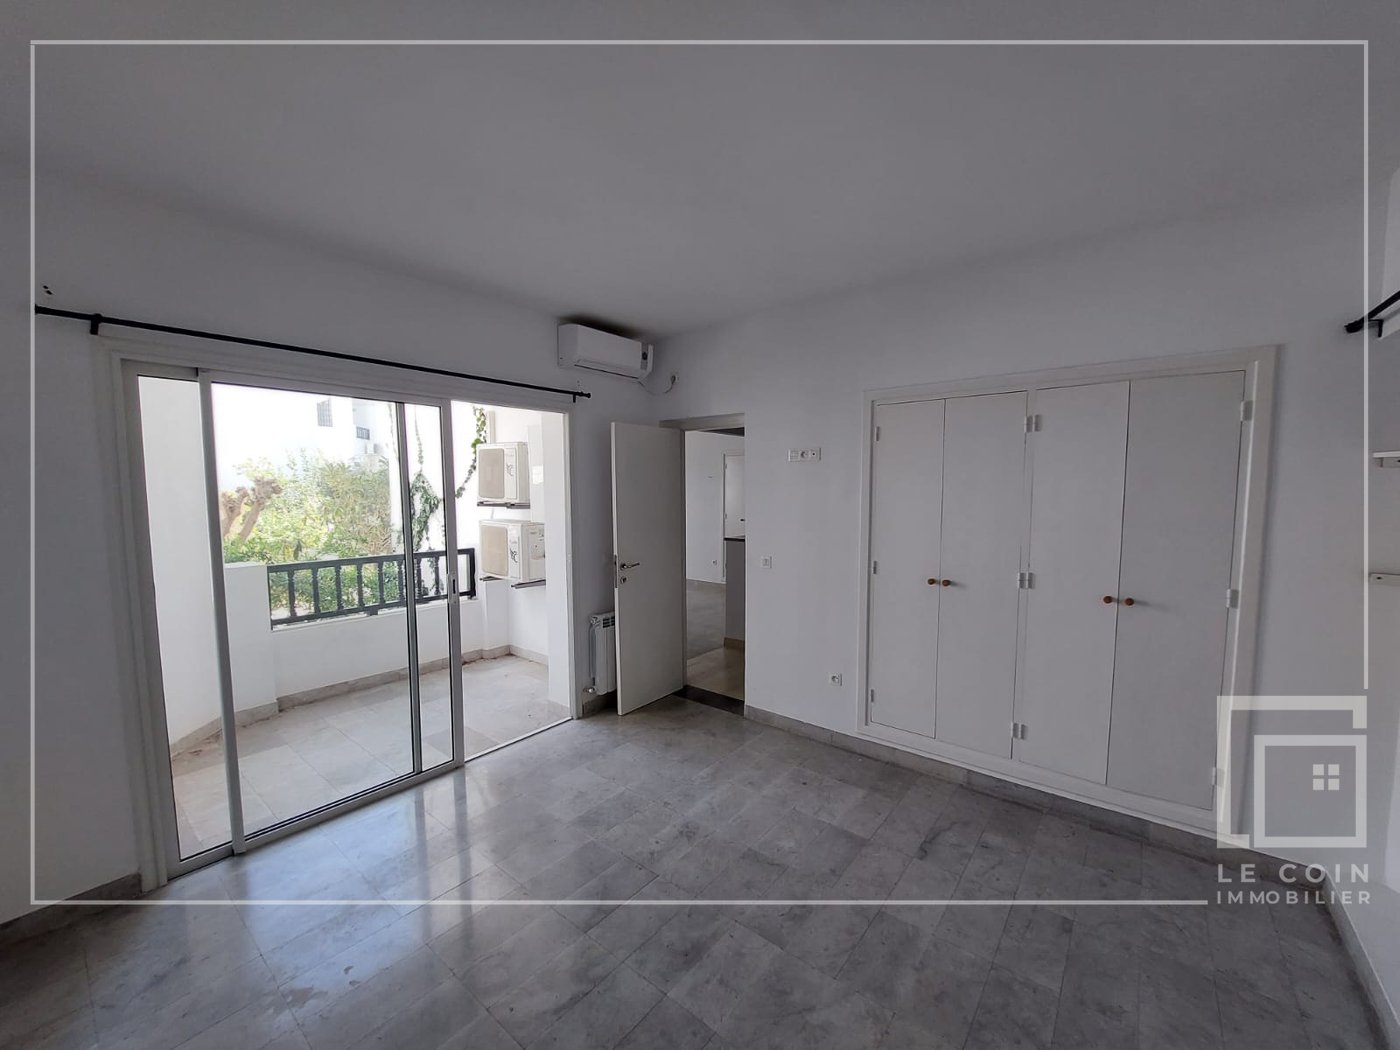 À vendre un appartement S+1 situé à #Hammamet CENTRE